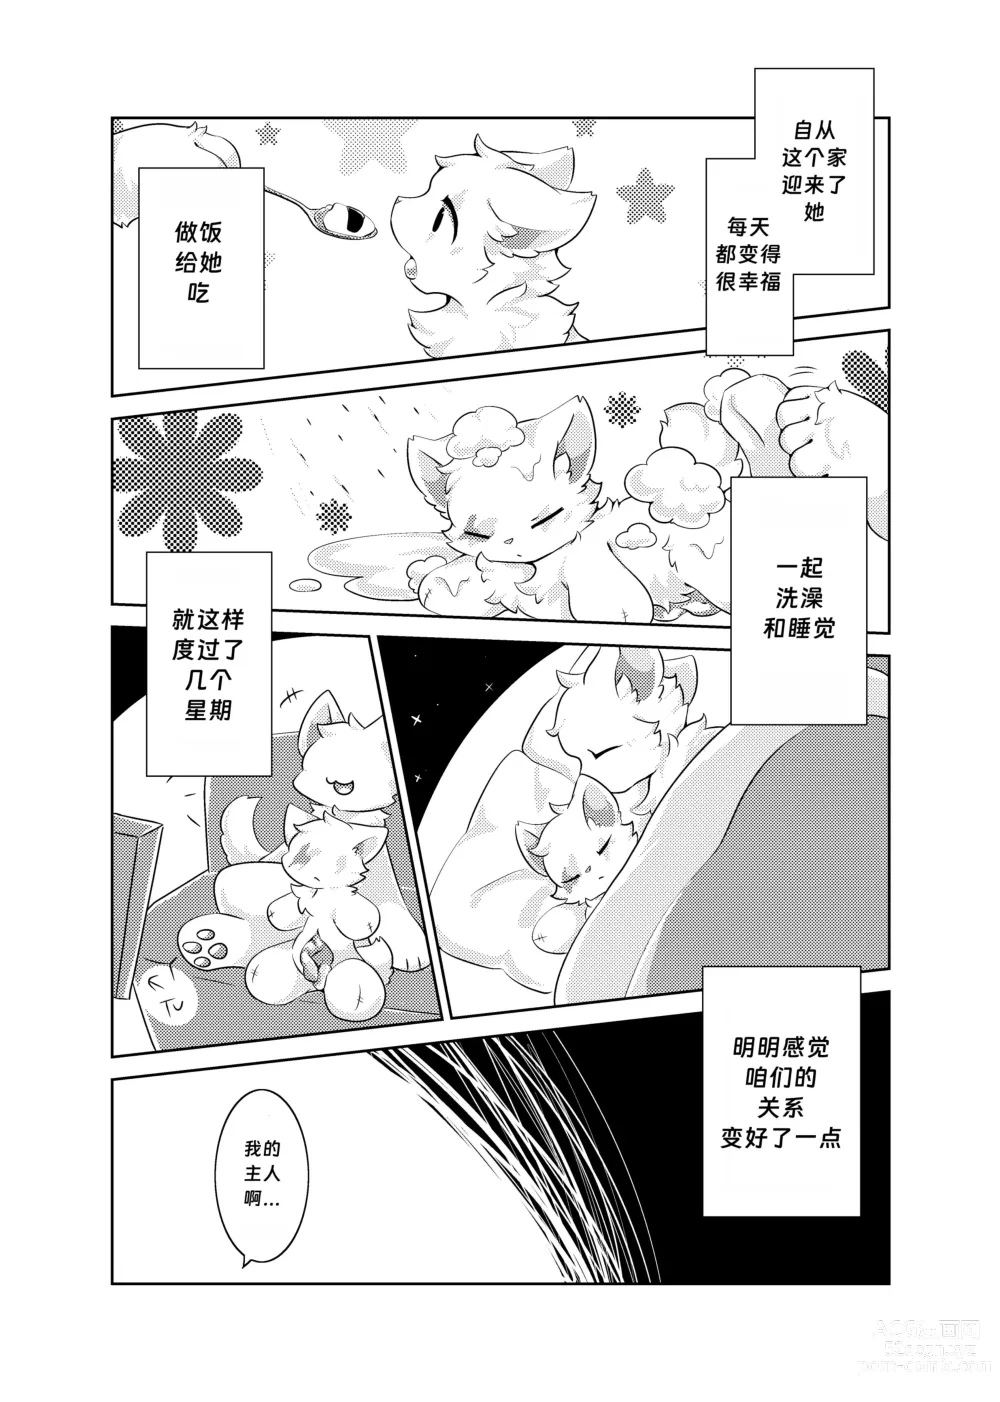 Page 10 of doujinshi Bokuyo motsuni no oishii seikatu.R-18G